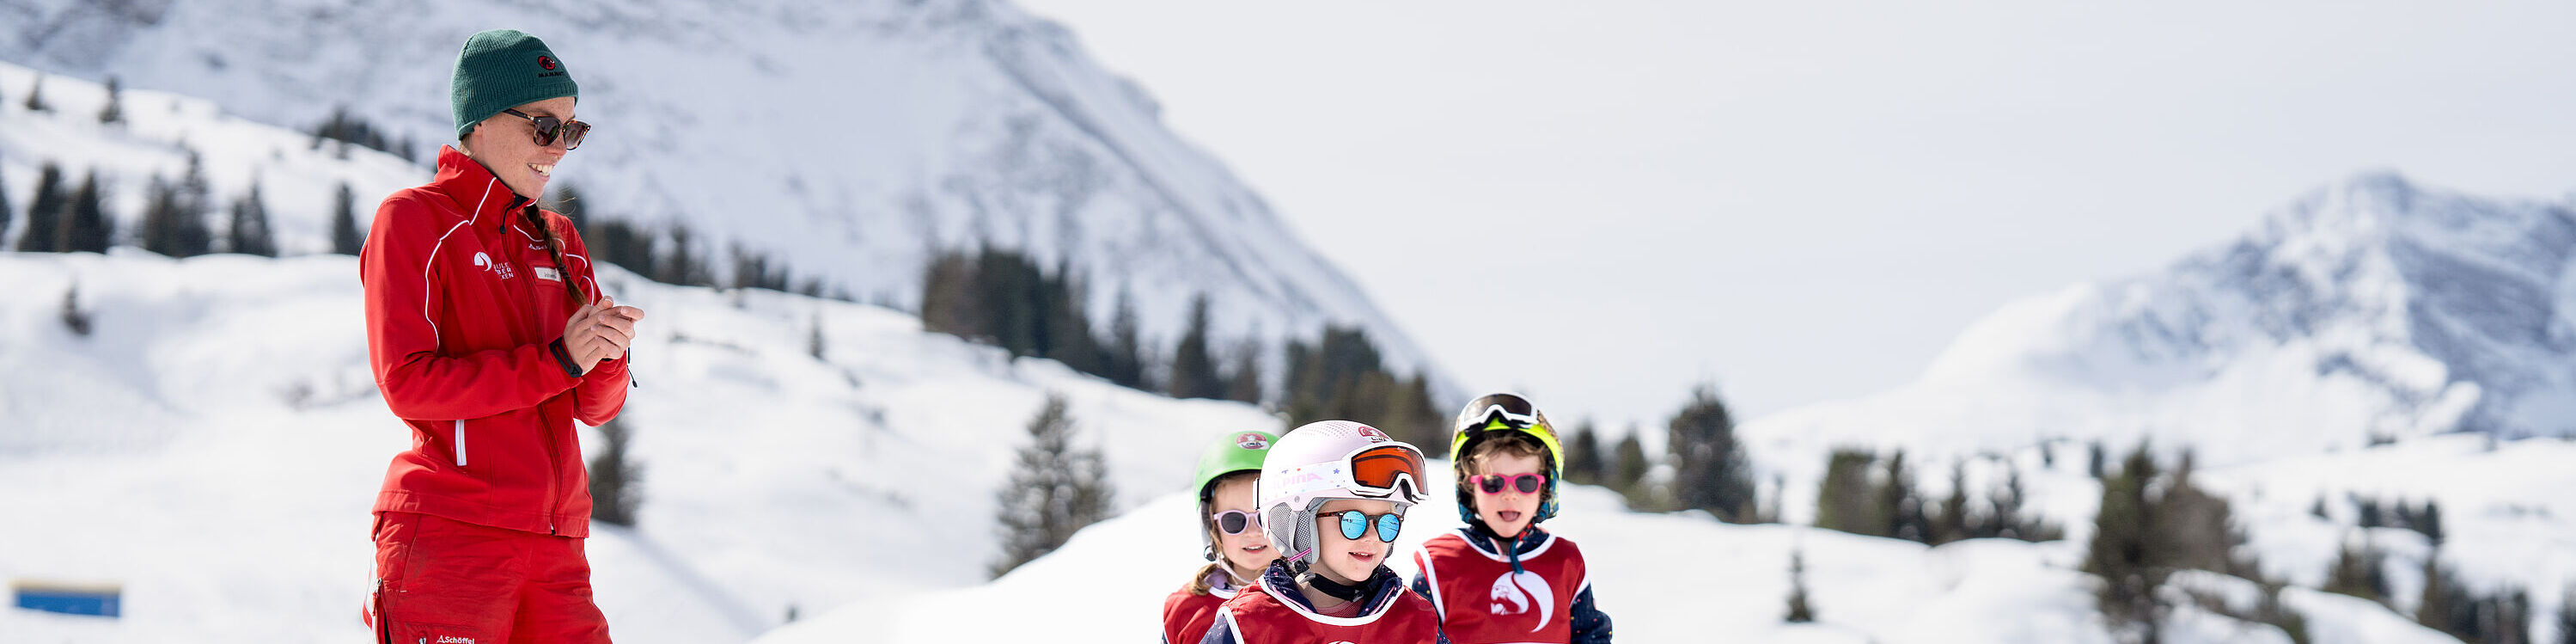 Ein junges Mädchen begibt sich in Startposition beim Kinder-Skirennen, hinter ihm stehen drei andere Kinder und eine Skilehrerin, die applaudiert